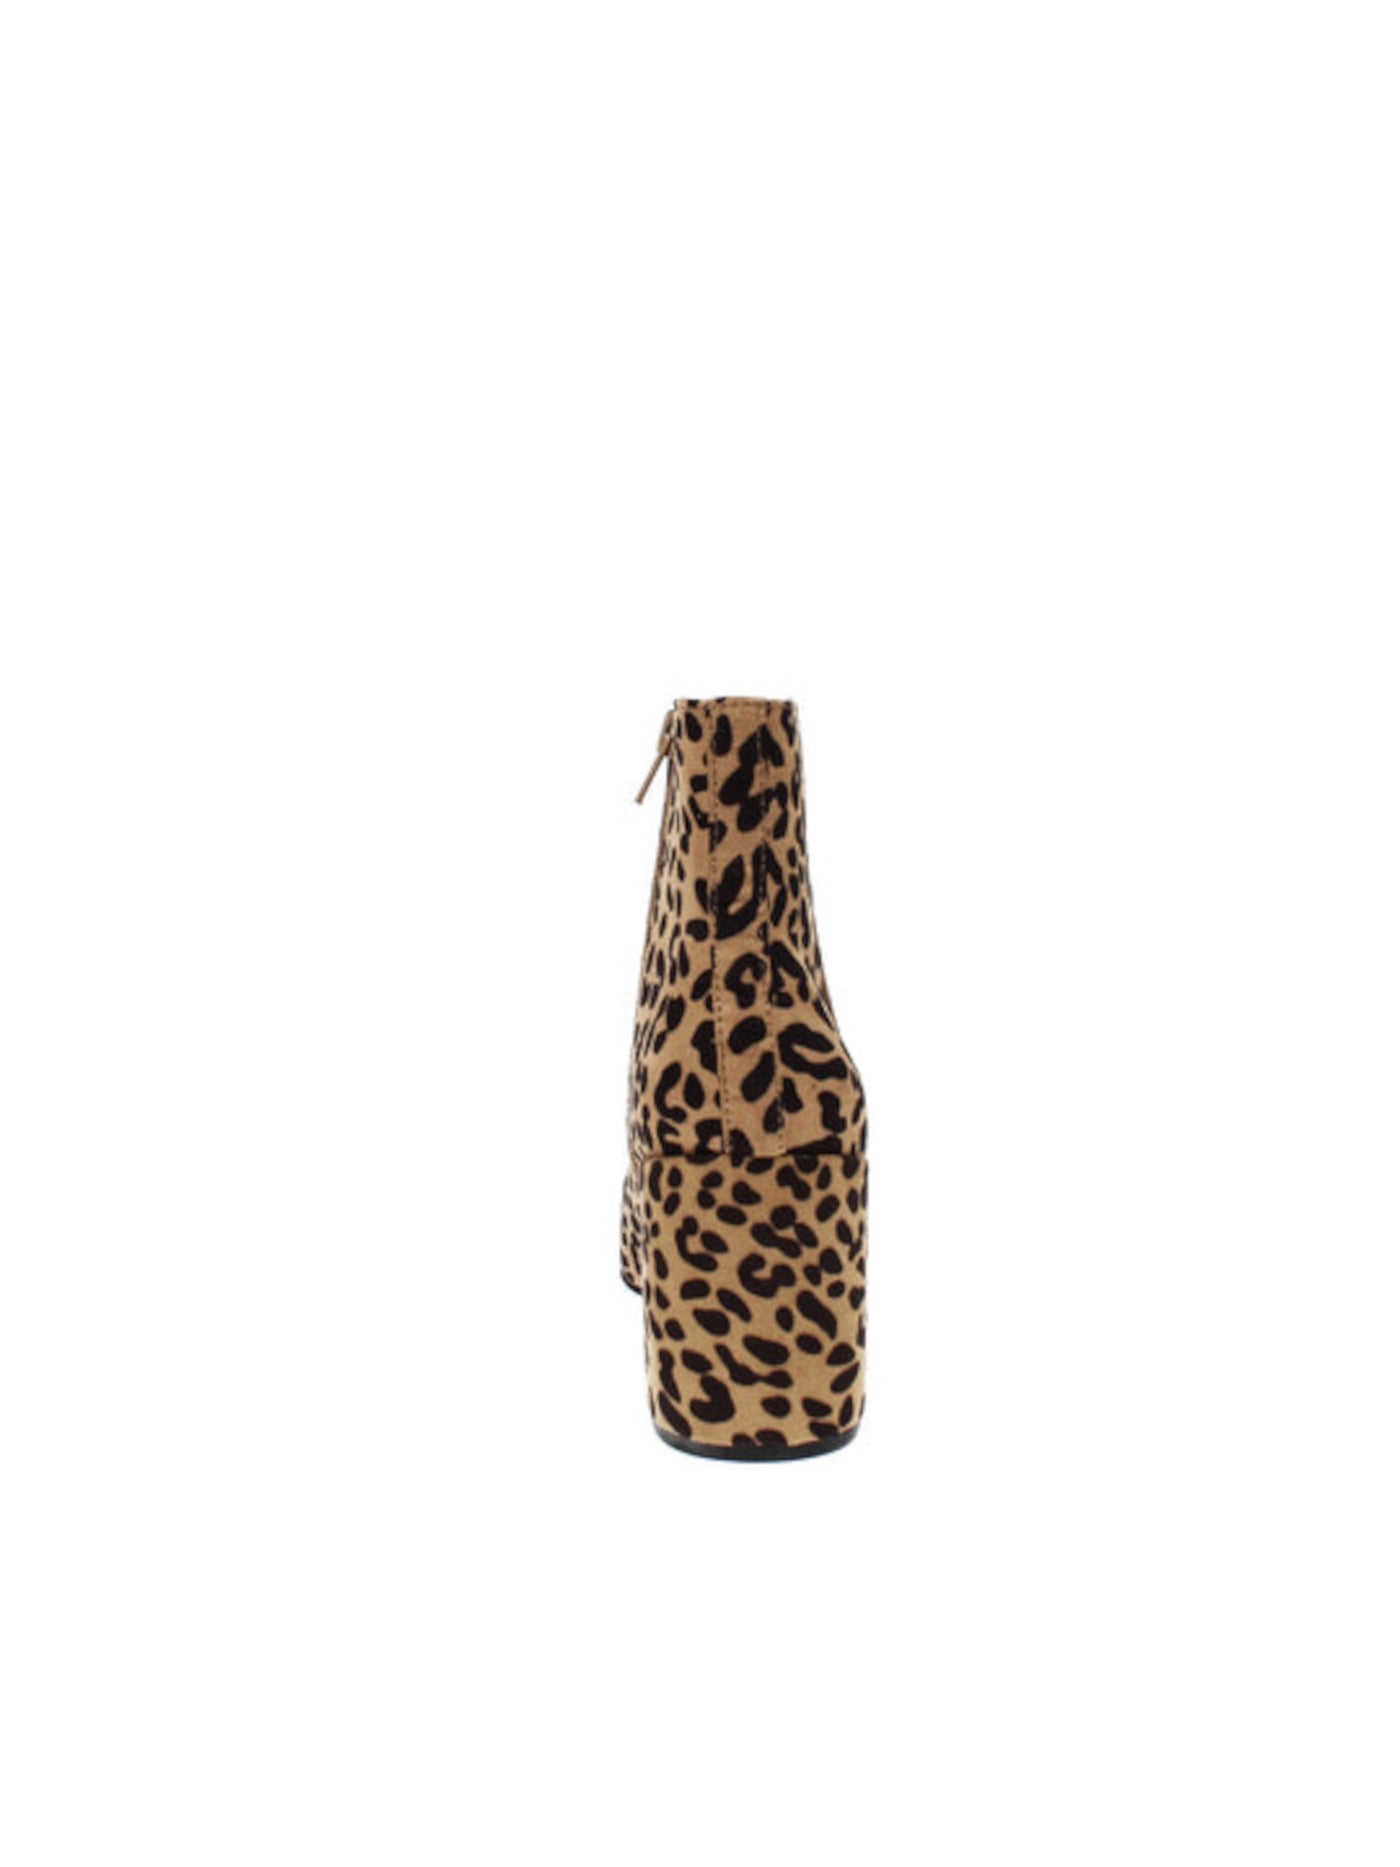 BAR III Womens Brown Leopard Print Comfort Gatlin Almond Toe Block Heel Zip-Up Booties 9 M